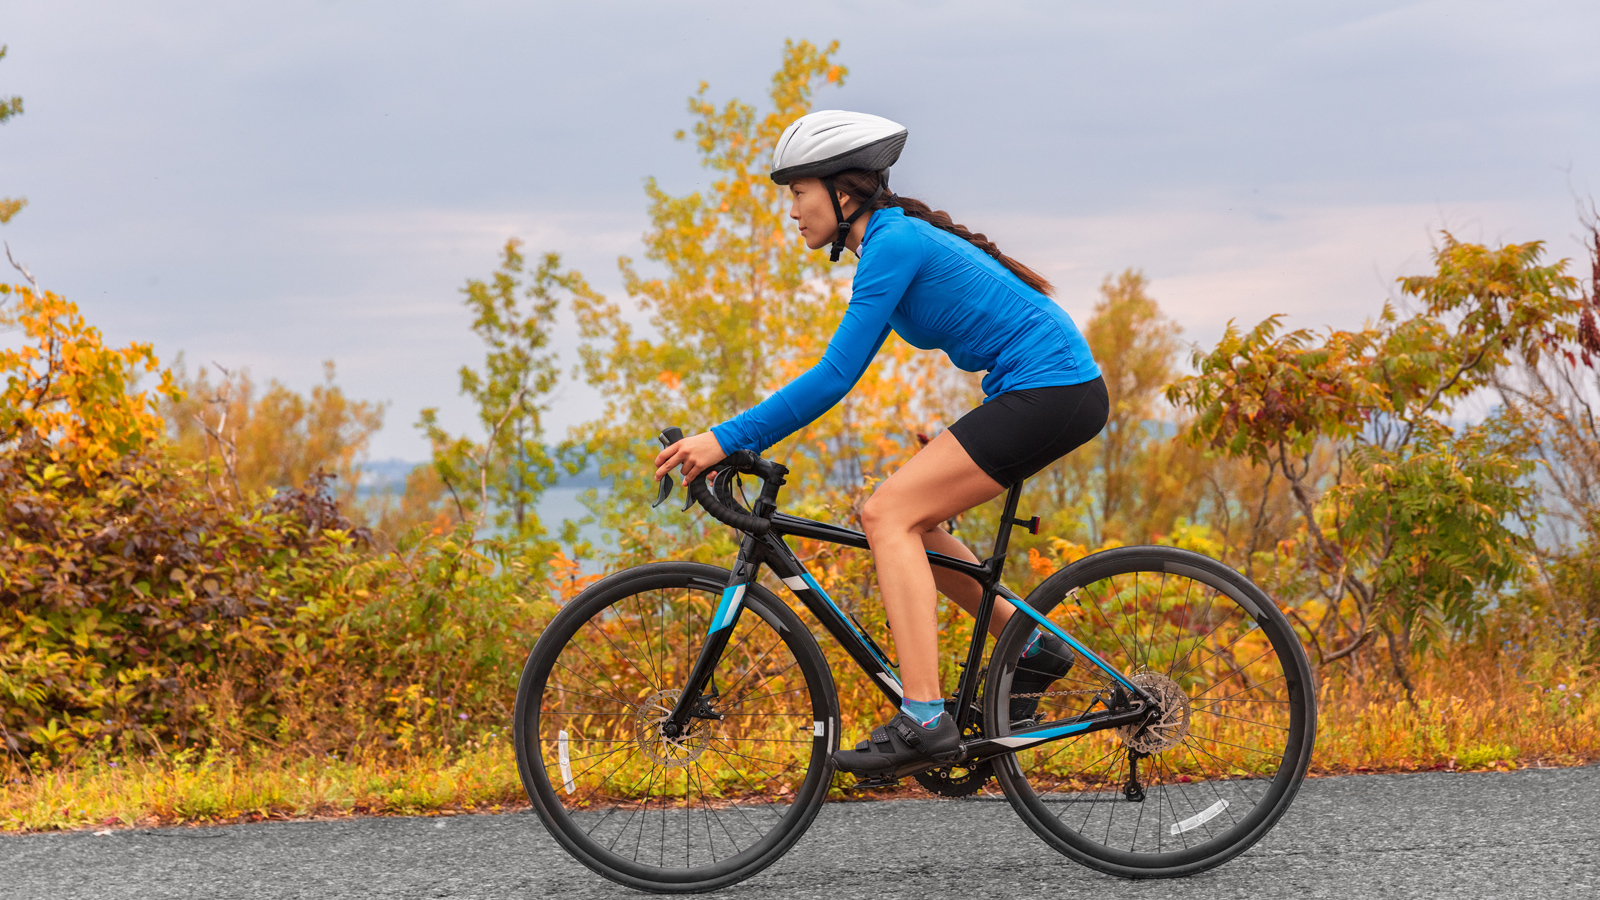 Kỹ thuật chạy xe đạp đúng để có lợi cho sức khỏe tối đa